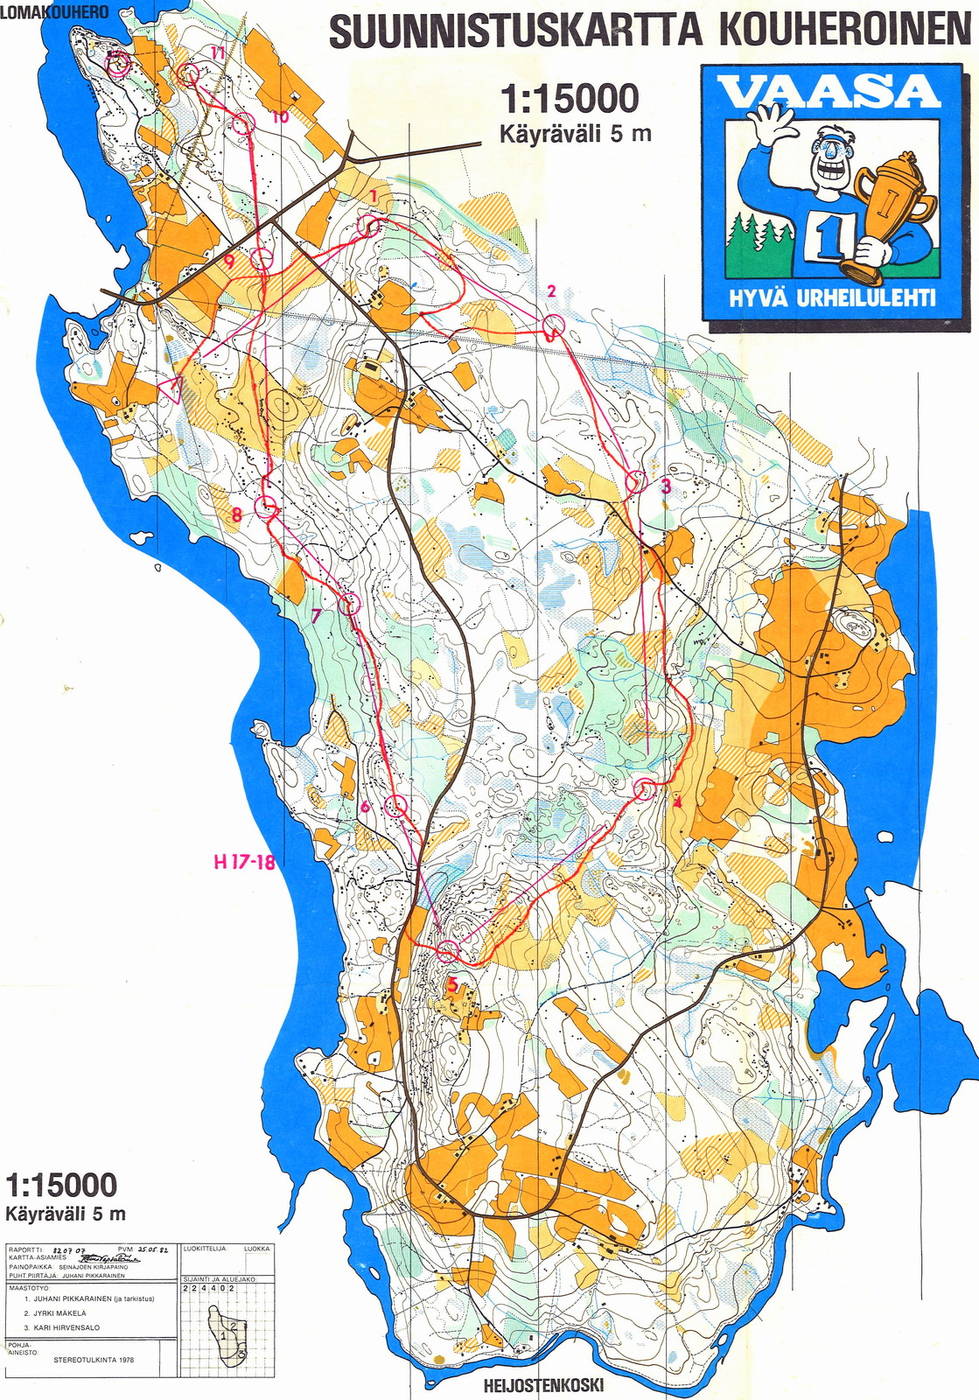 Karstulan kansalliset, H17-18, 7,8 km (27/06/1982)